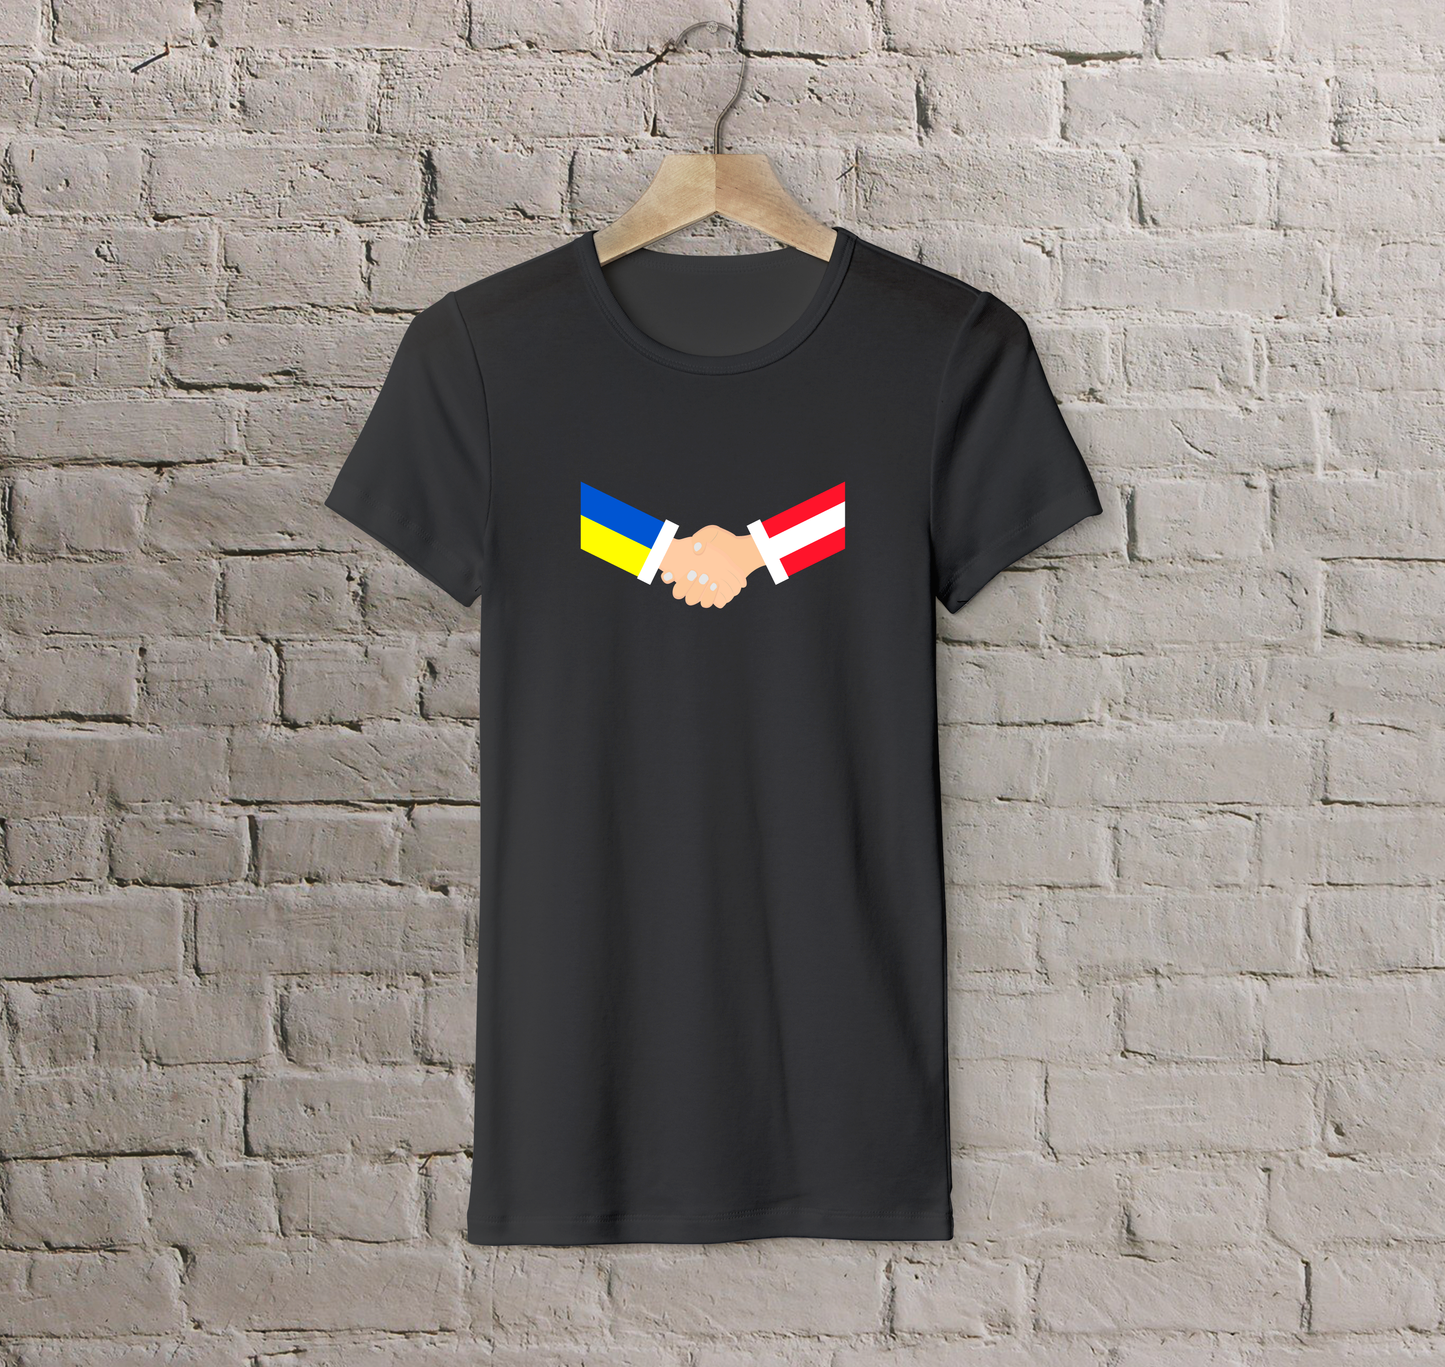 T-shirt Austria + Ukraine (handshake)